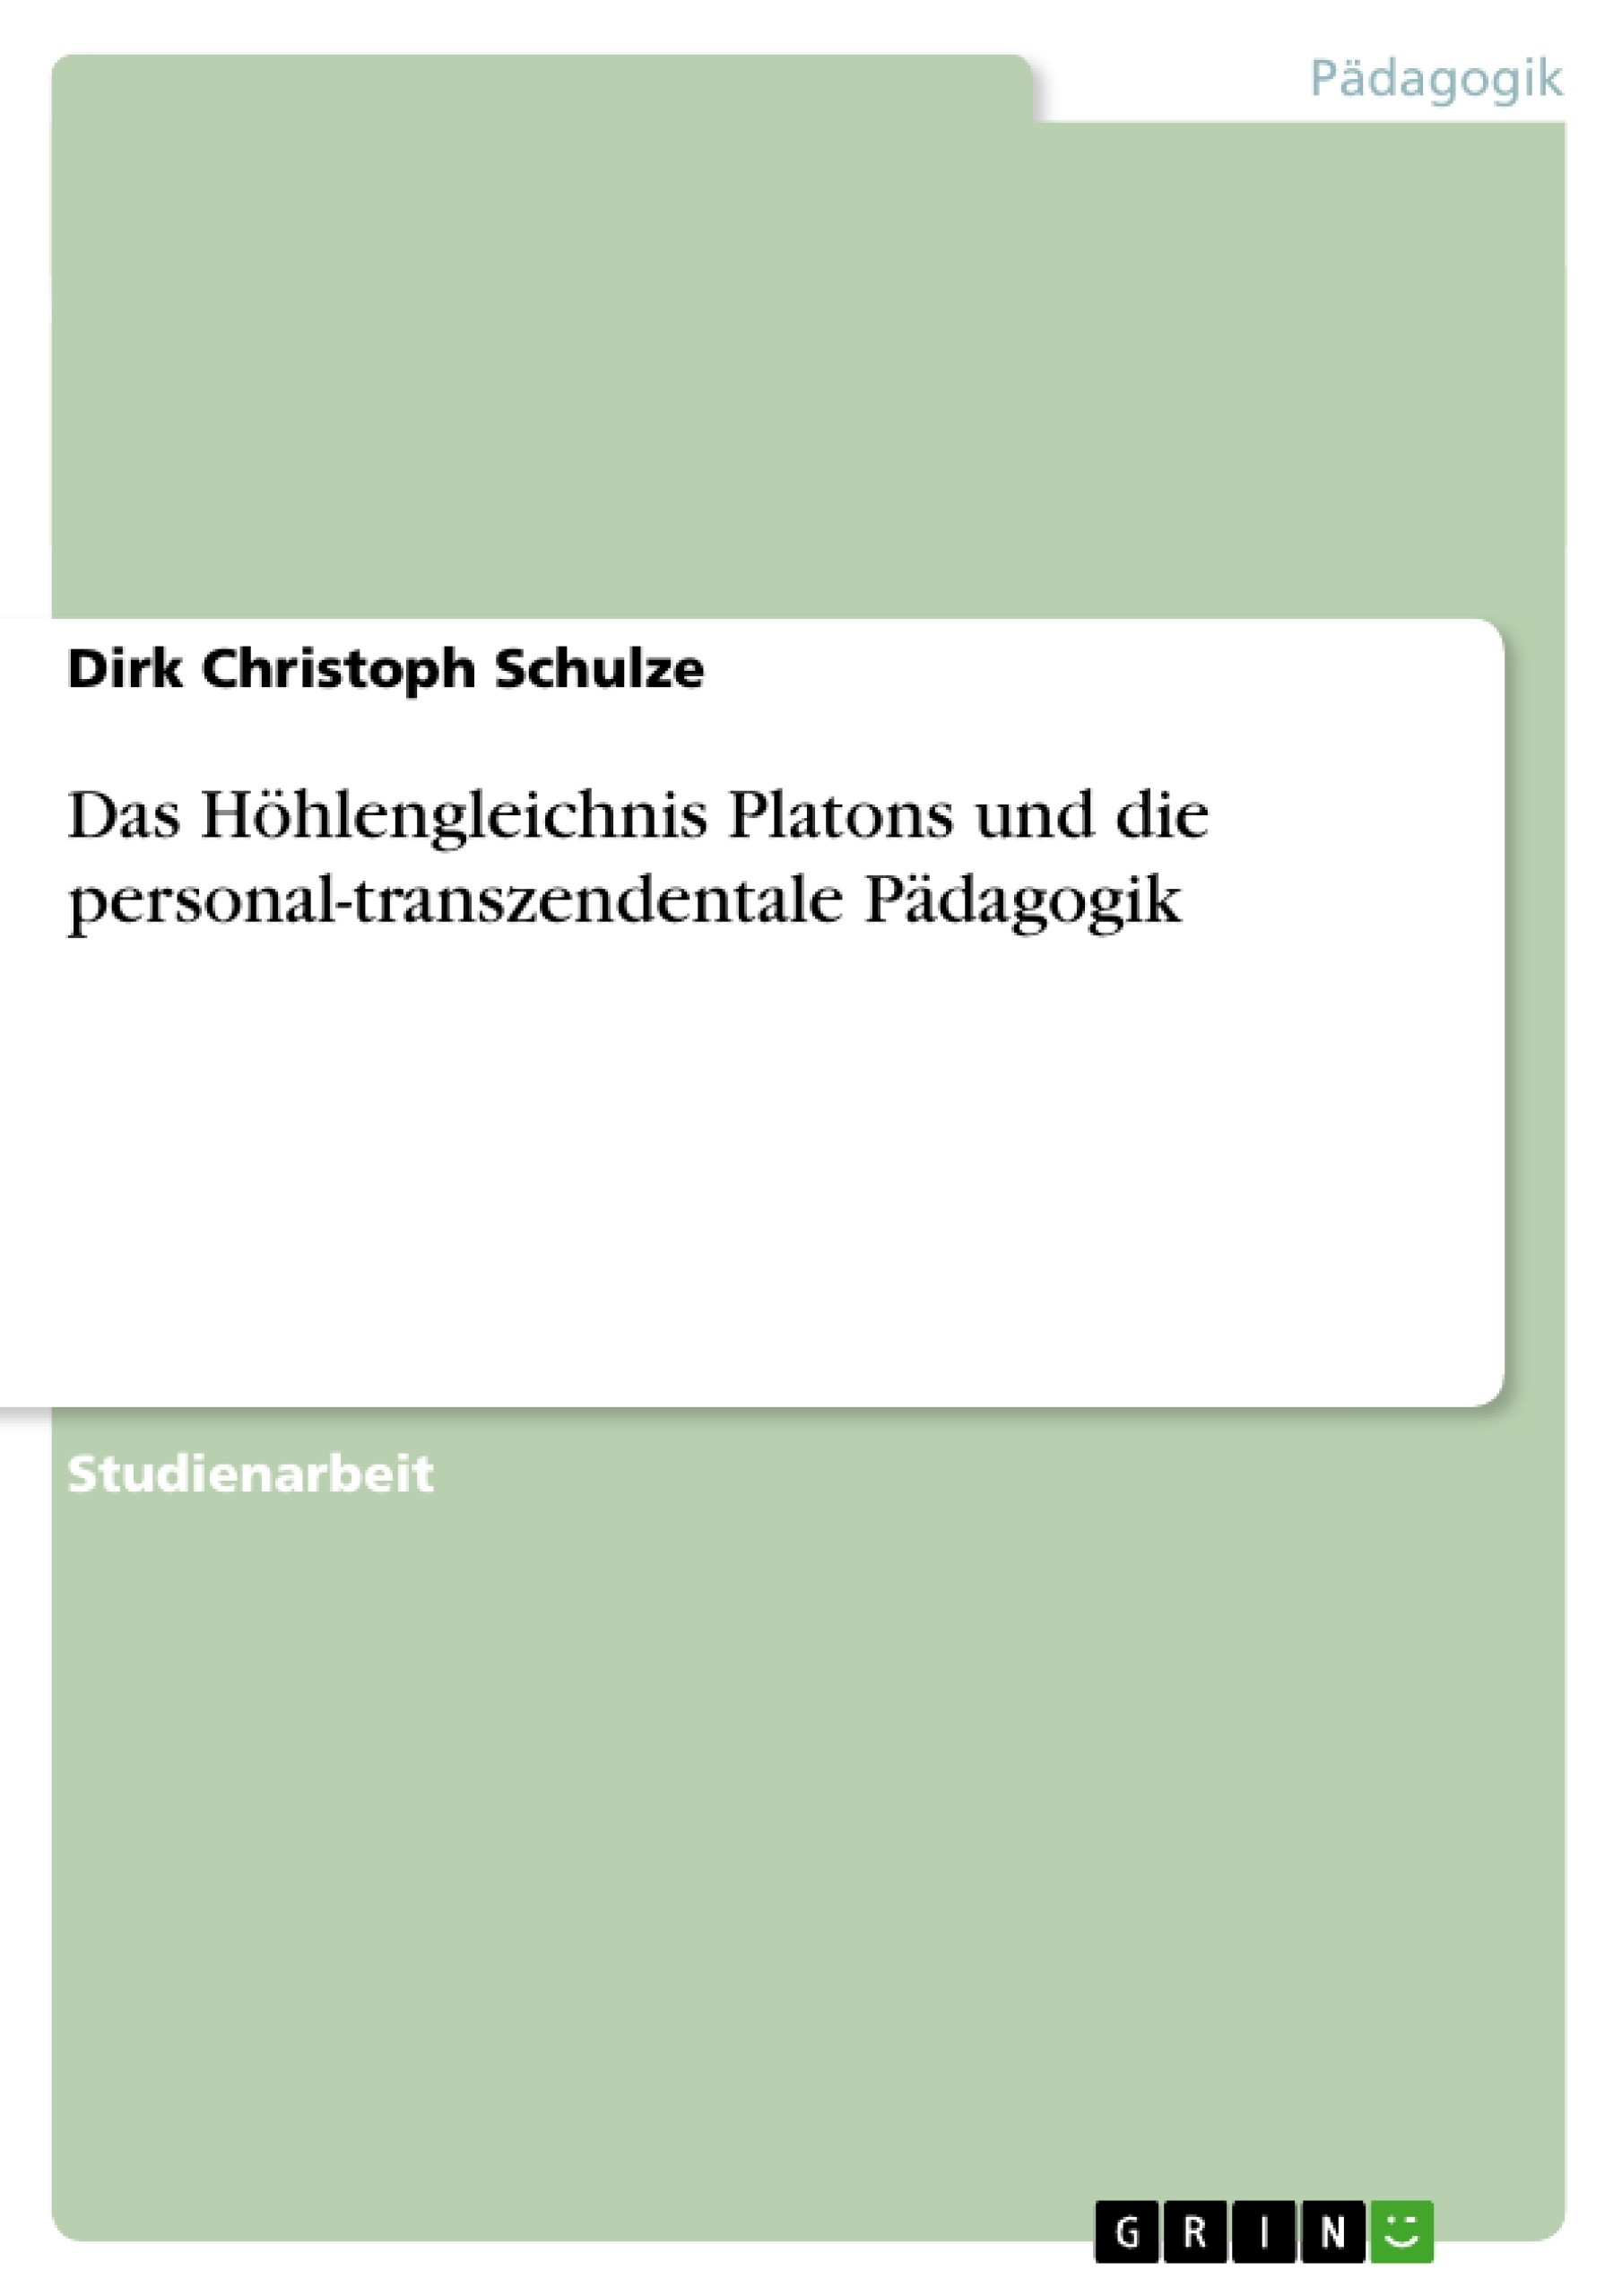 Title: Das Höhlengleichnis Platons und die personal-transzendentale Pädagogik